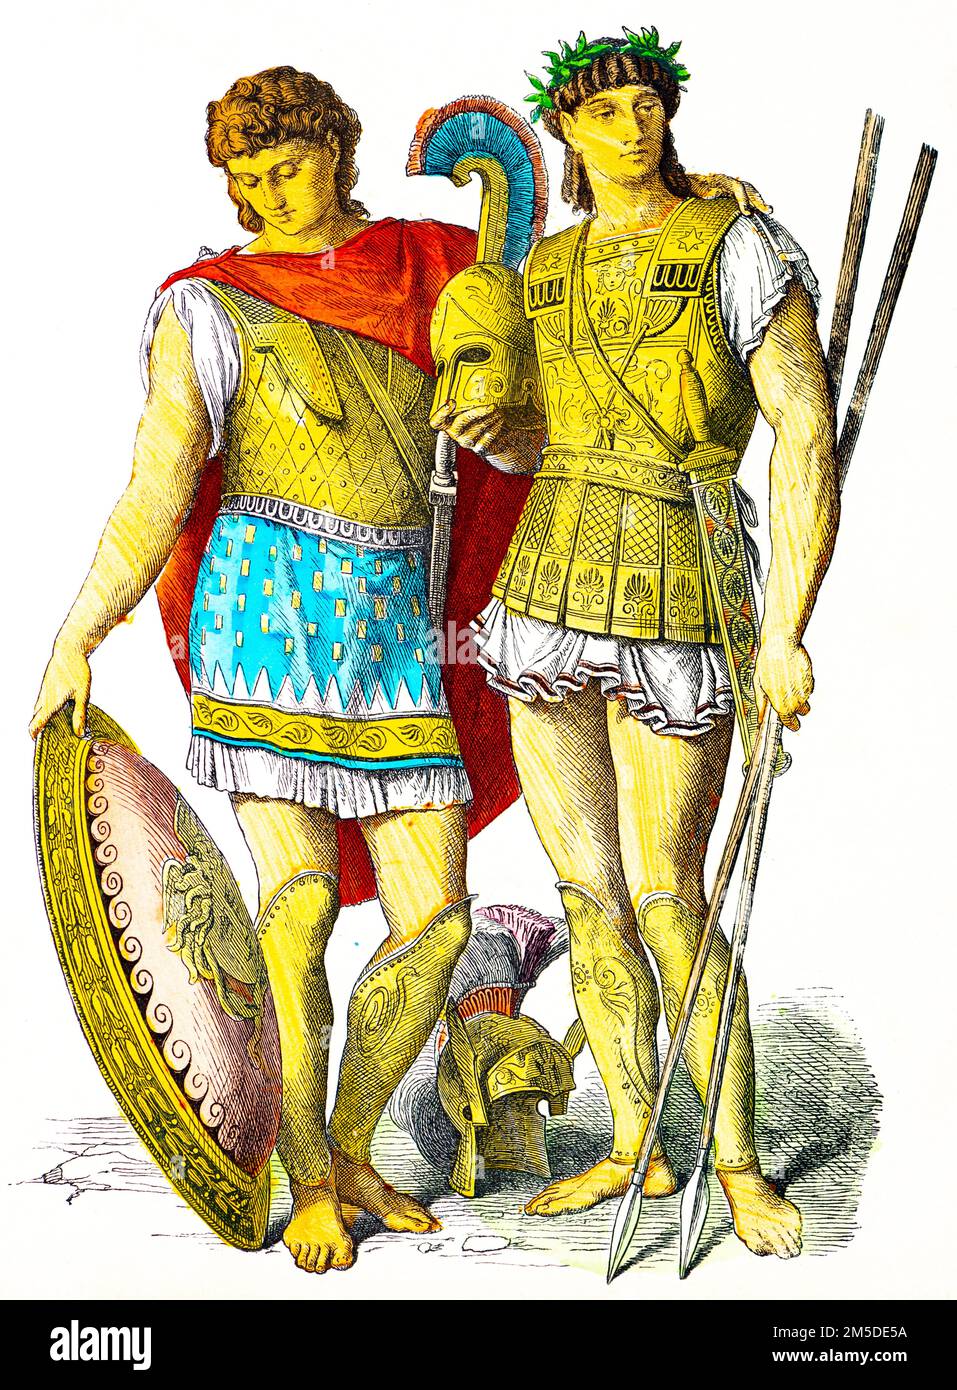 Historische Kostüme des Griechen der Antike, farbige historische Illustration, Münchener Bilderbogen, München 1890 Stockfoto